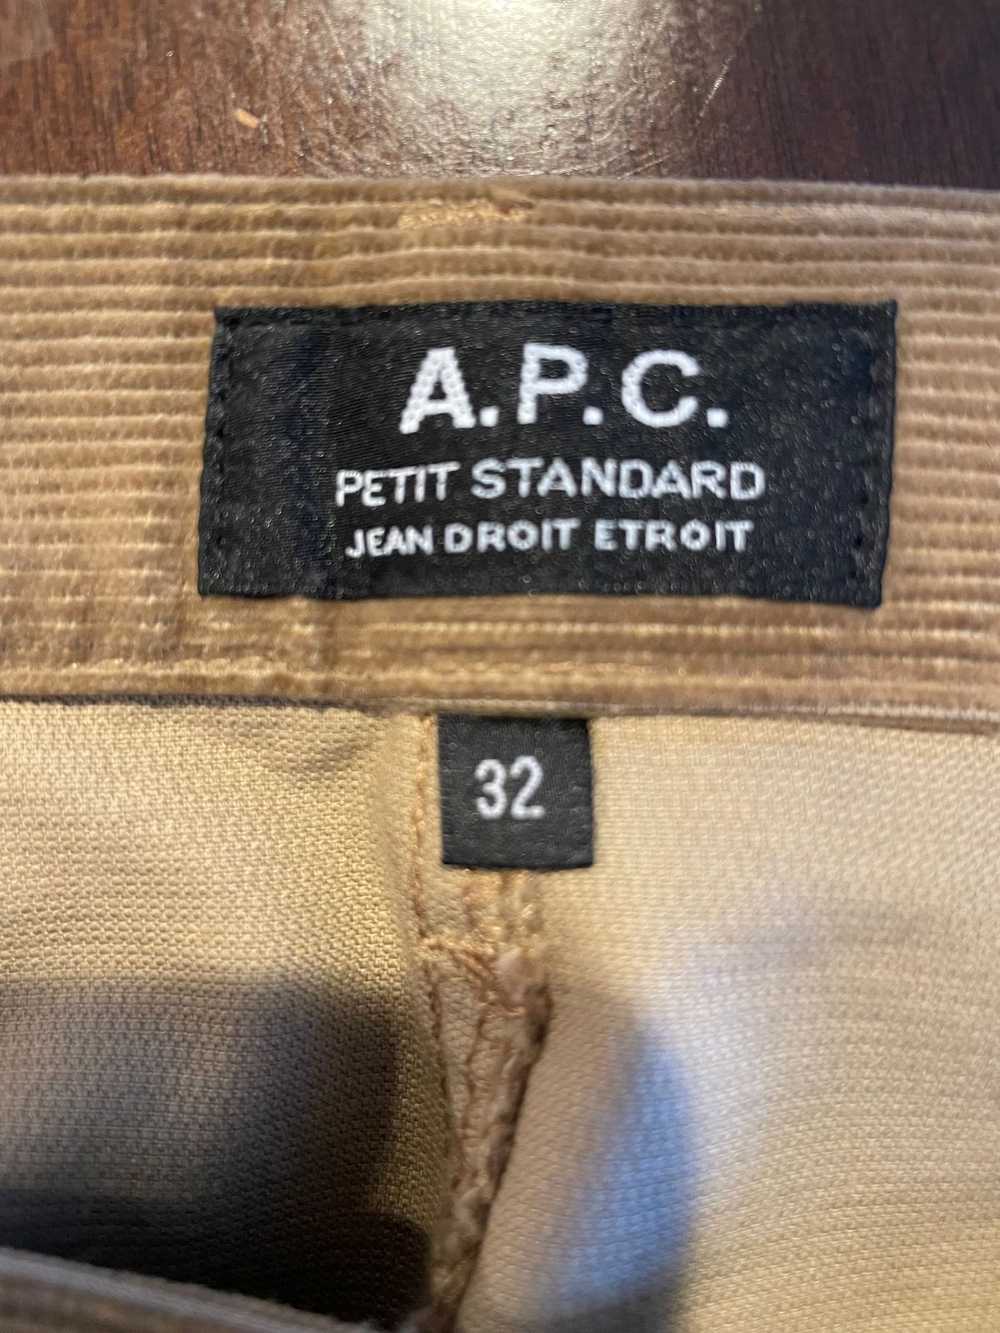 A.P.C. A.P.C. Petit Standard Corduroy Pants - image 3